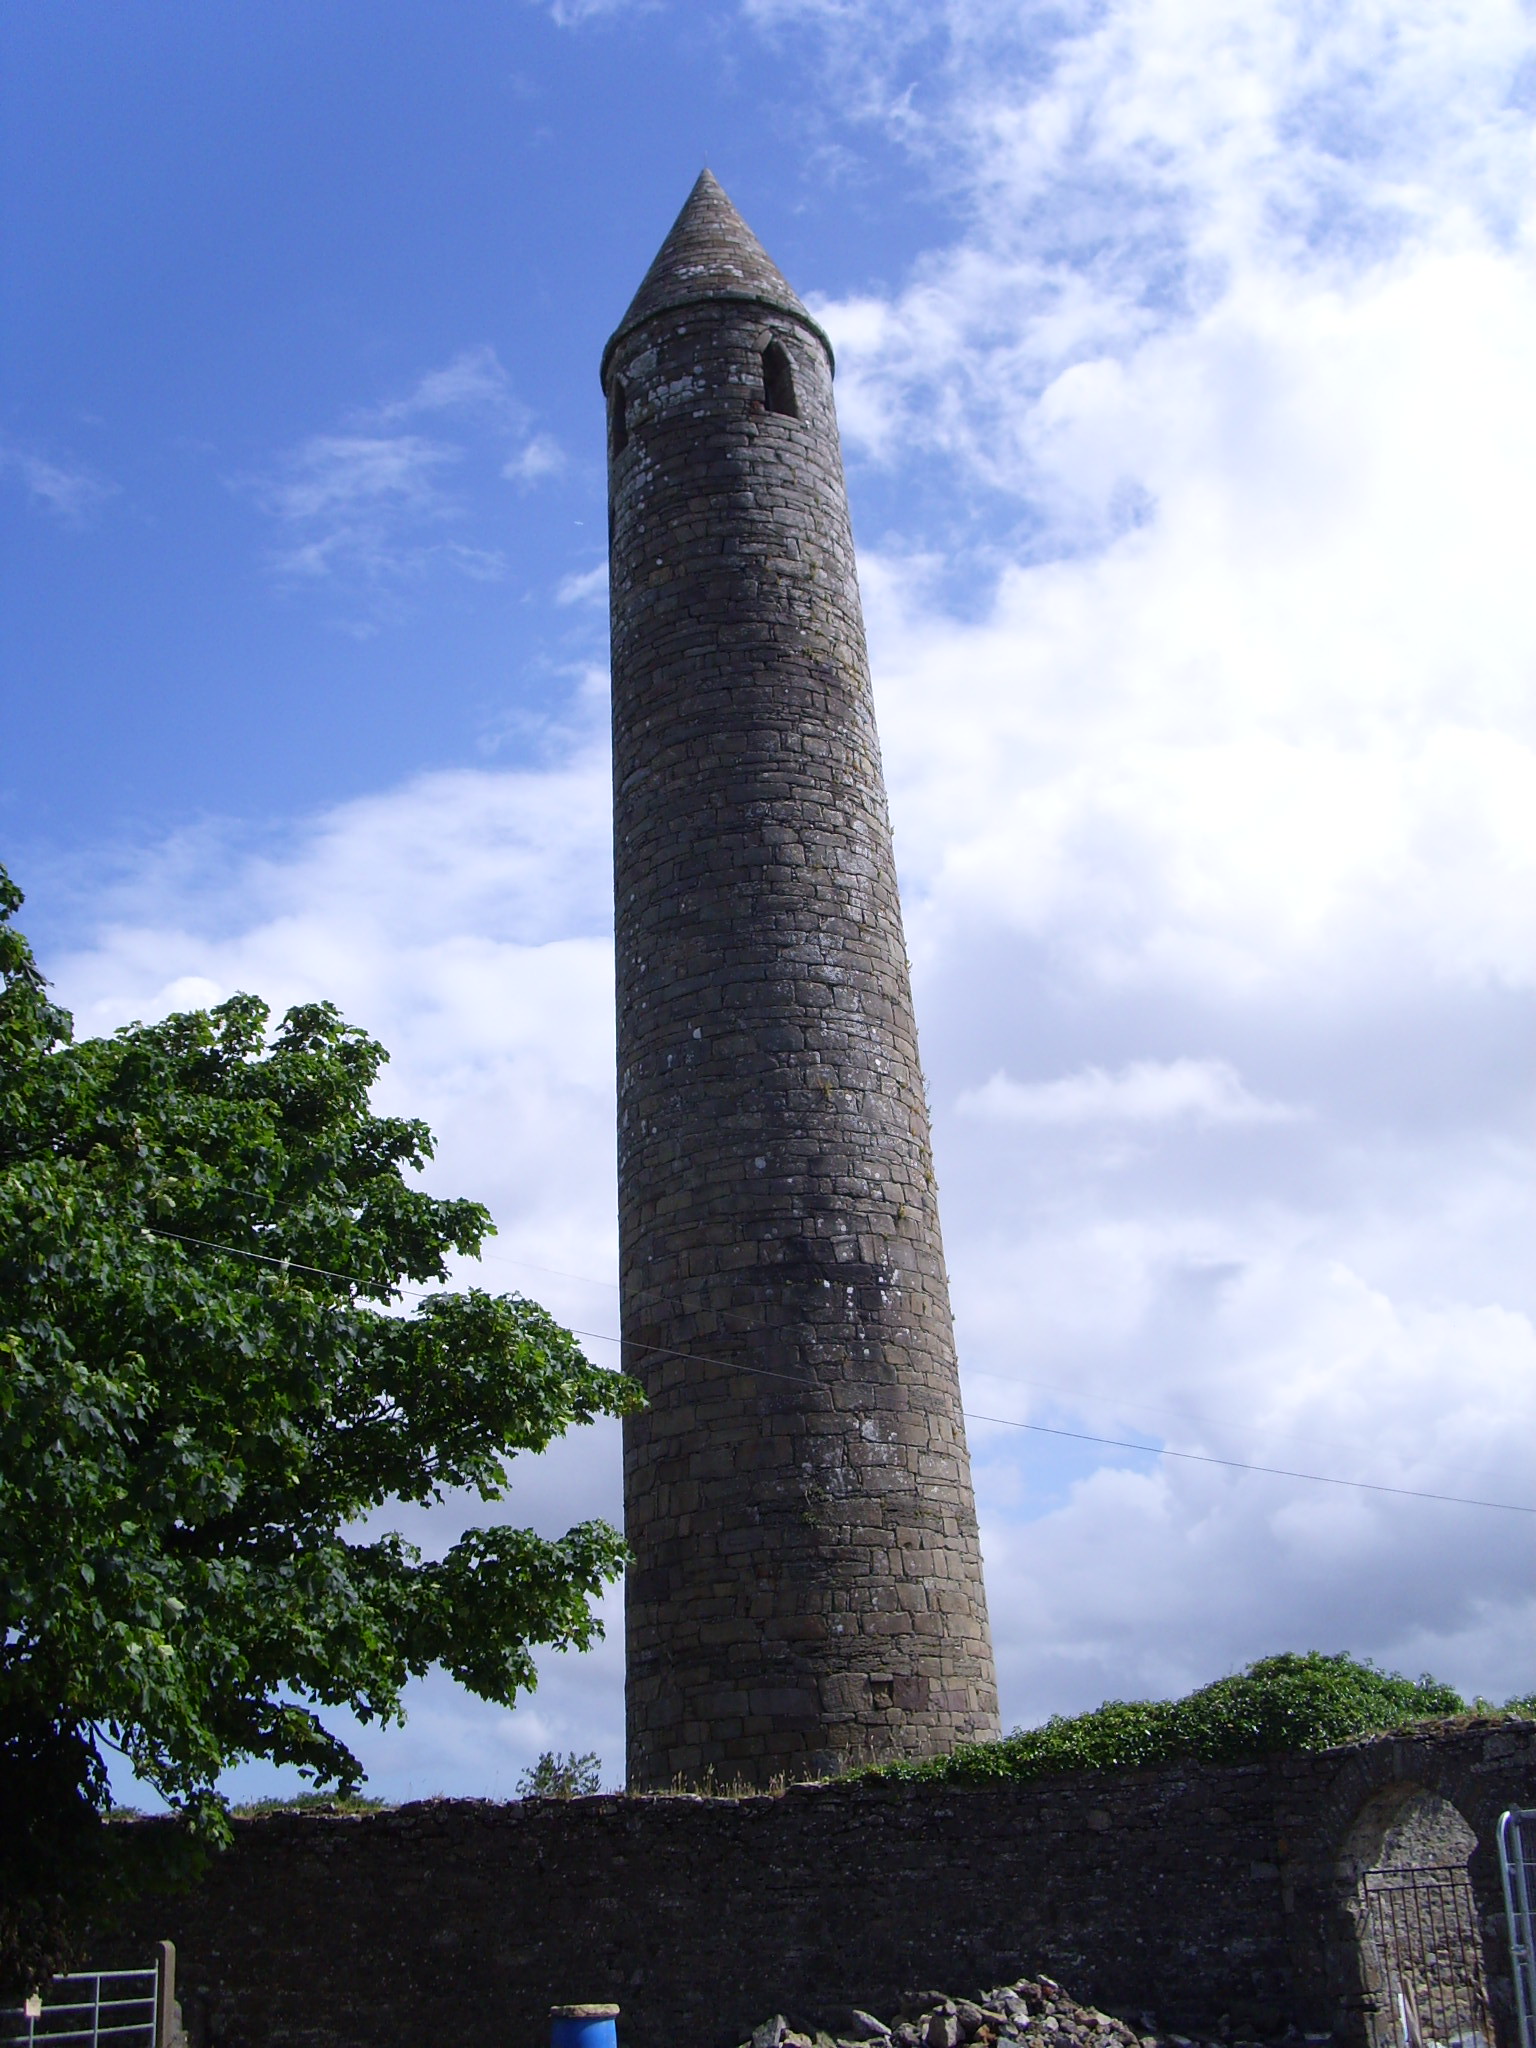 Round tower. Круглые башни джерси. Antrim Round Tower. Kells Round Tower.